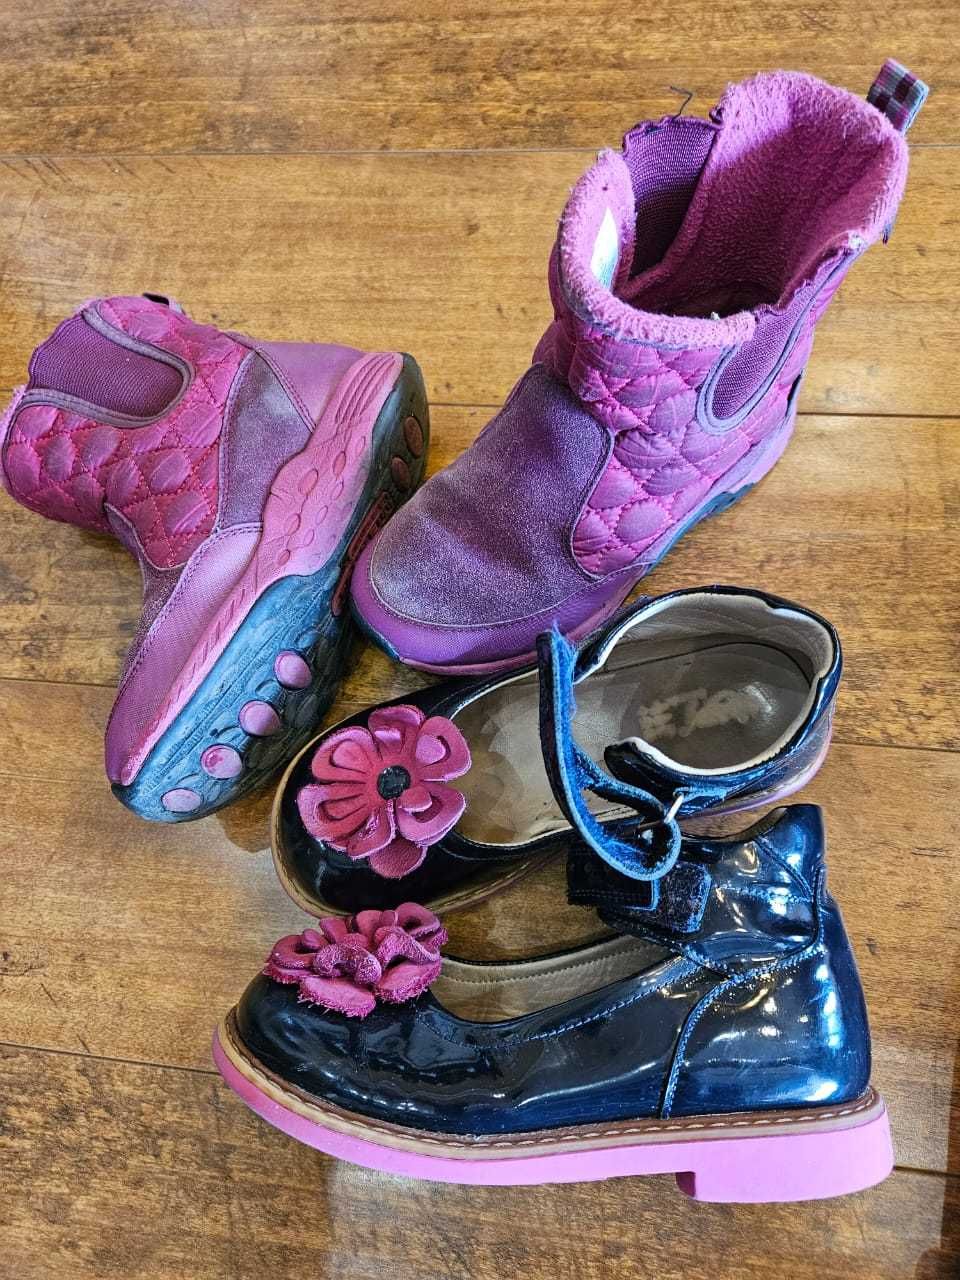 Обувь Ecco,Colmar, Merrell для девочки р-р 30 19,5 см. стелька